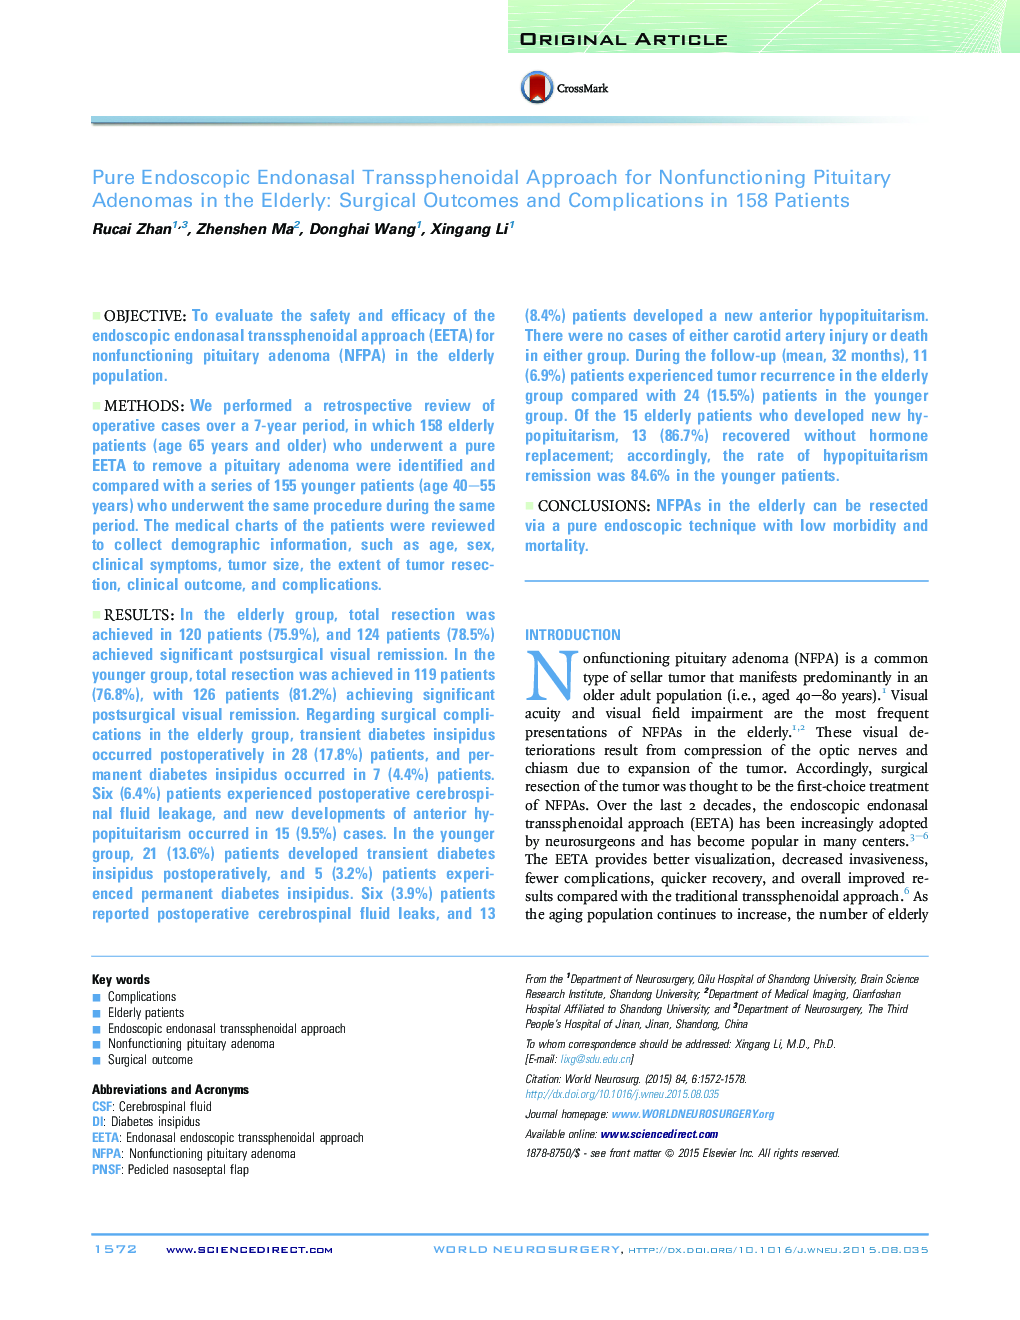 اصل مقاله اندواسپوپیک انتساسال روتانس تنفسی برای درمان اختلالات آدنوم های هیپوفیز در سالمندان: نتایج و عوارض جراحی در 158 بیمار 